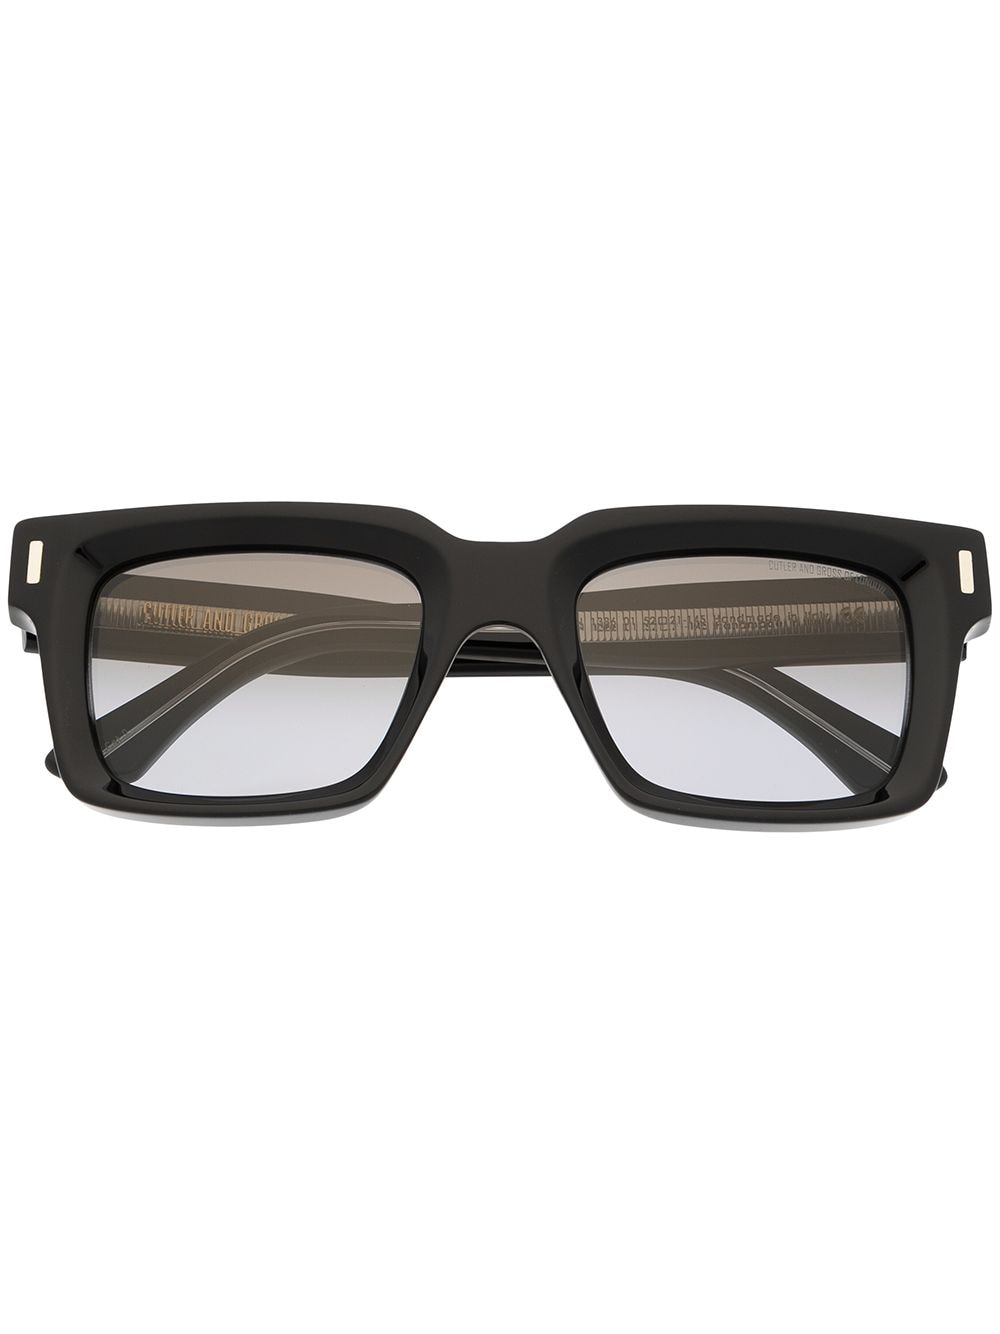 Cutler & Gross square black sunglasses von Cutler & Gross